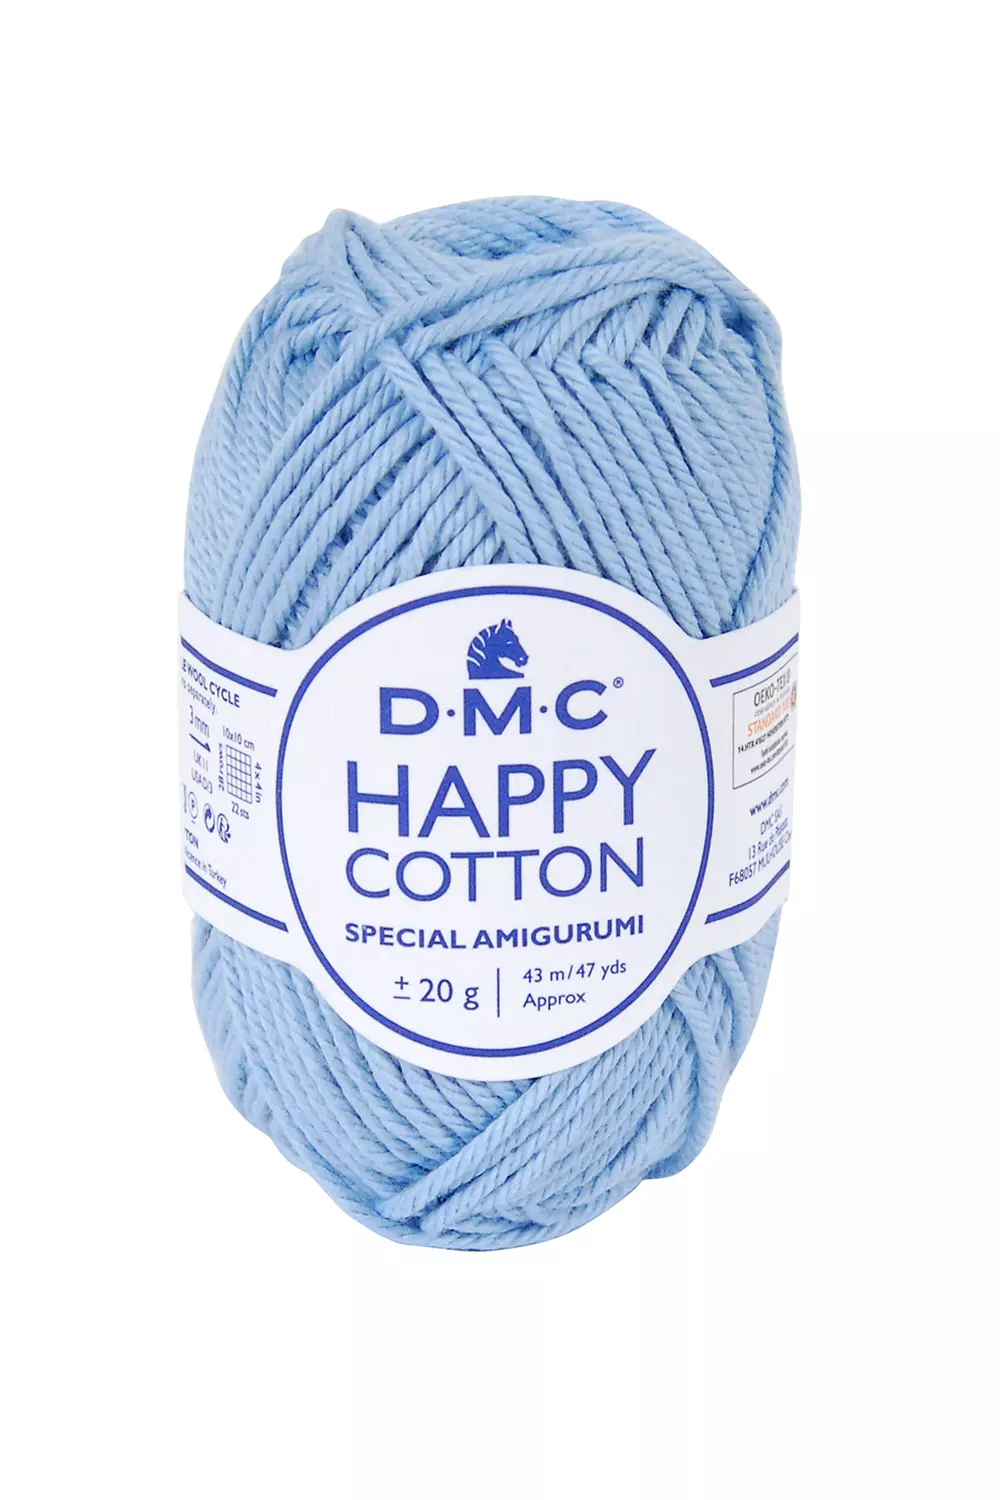 Cotton Yarn Knitting Amigurumis, Crochet Amigurumi Thread